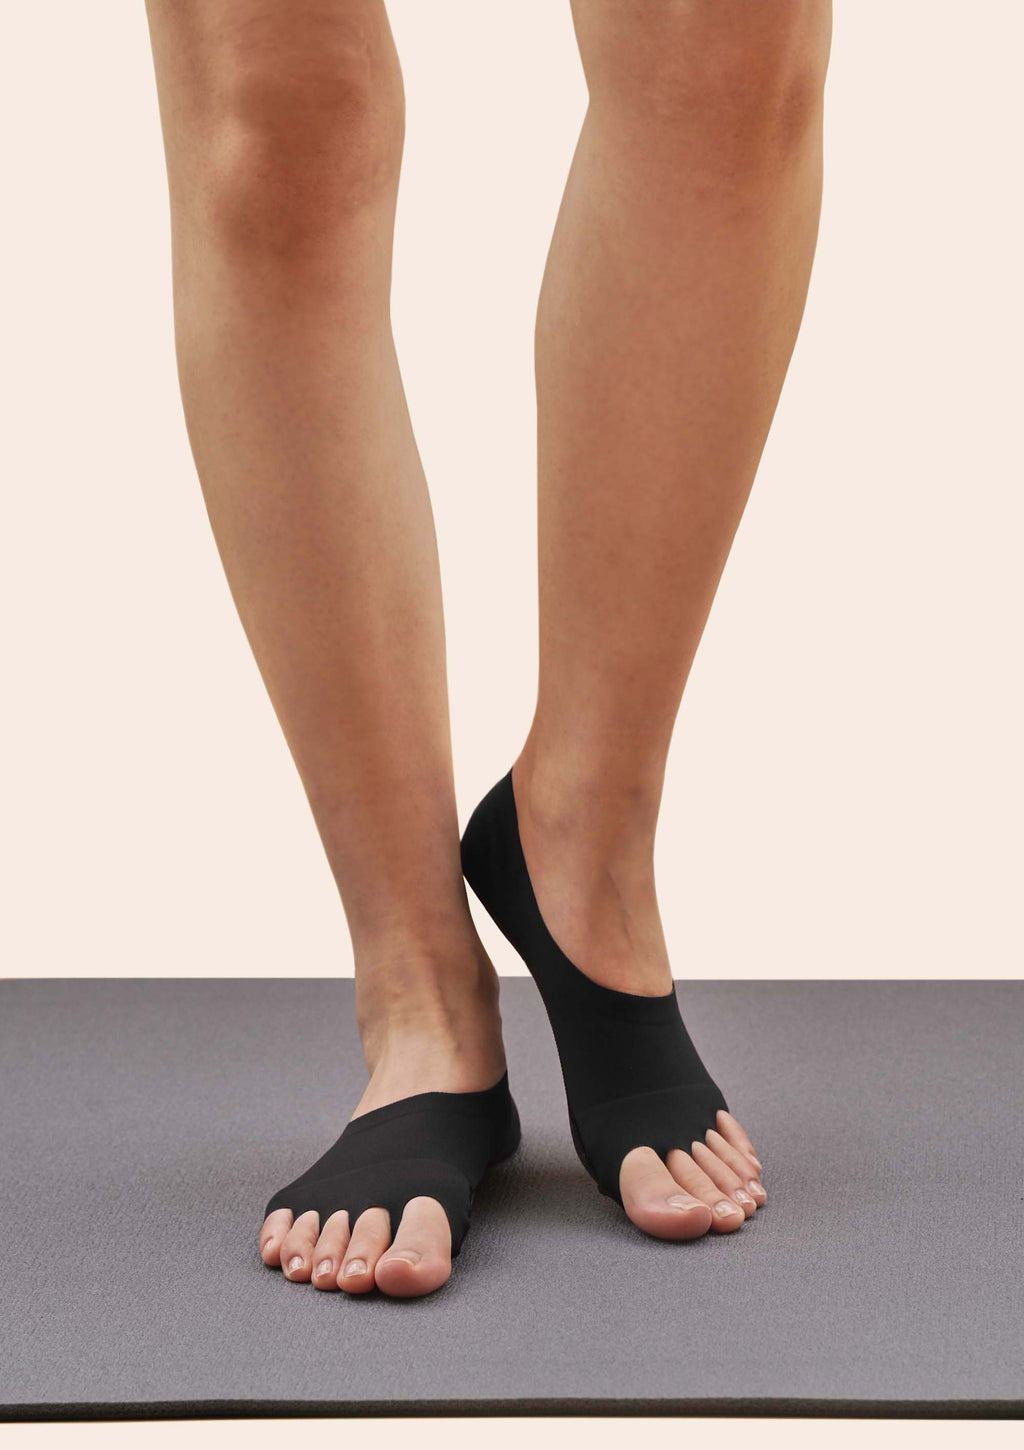 PUTUO Yoga Pilates Socks for Women: Yoga Non Slip Socks for